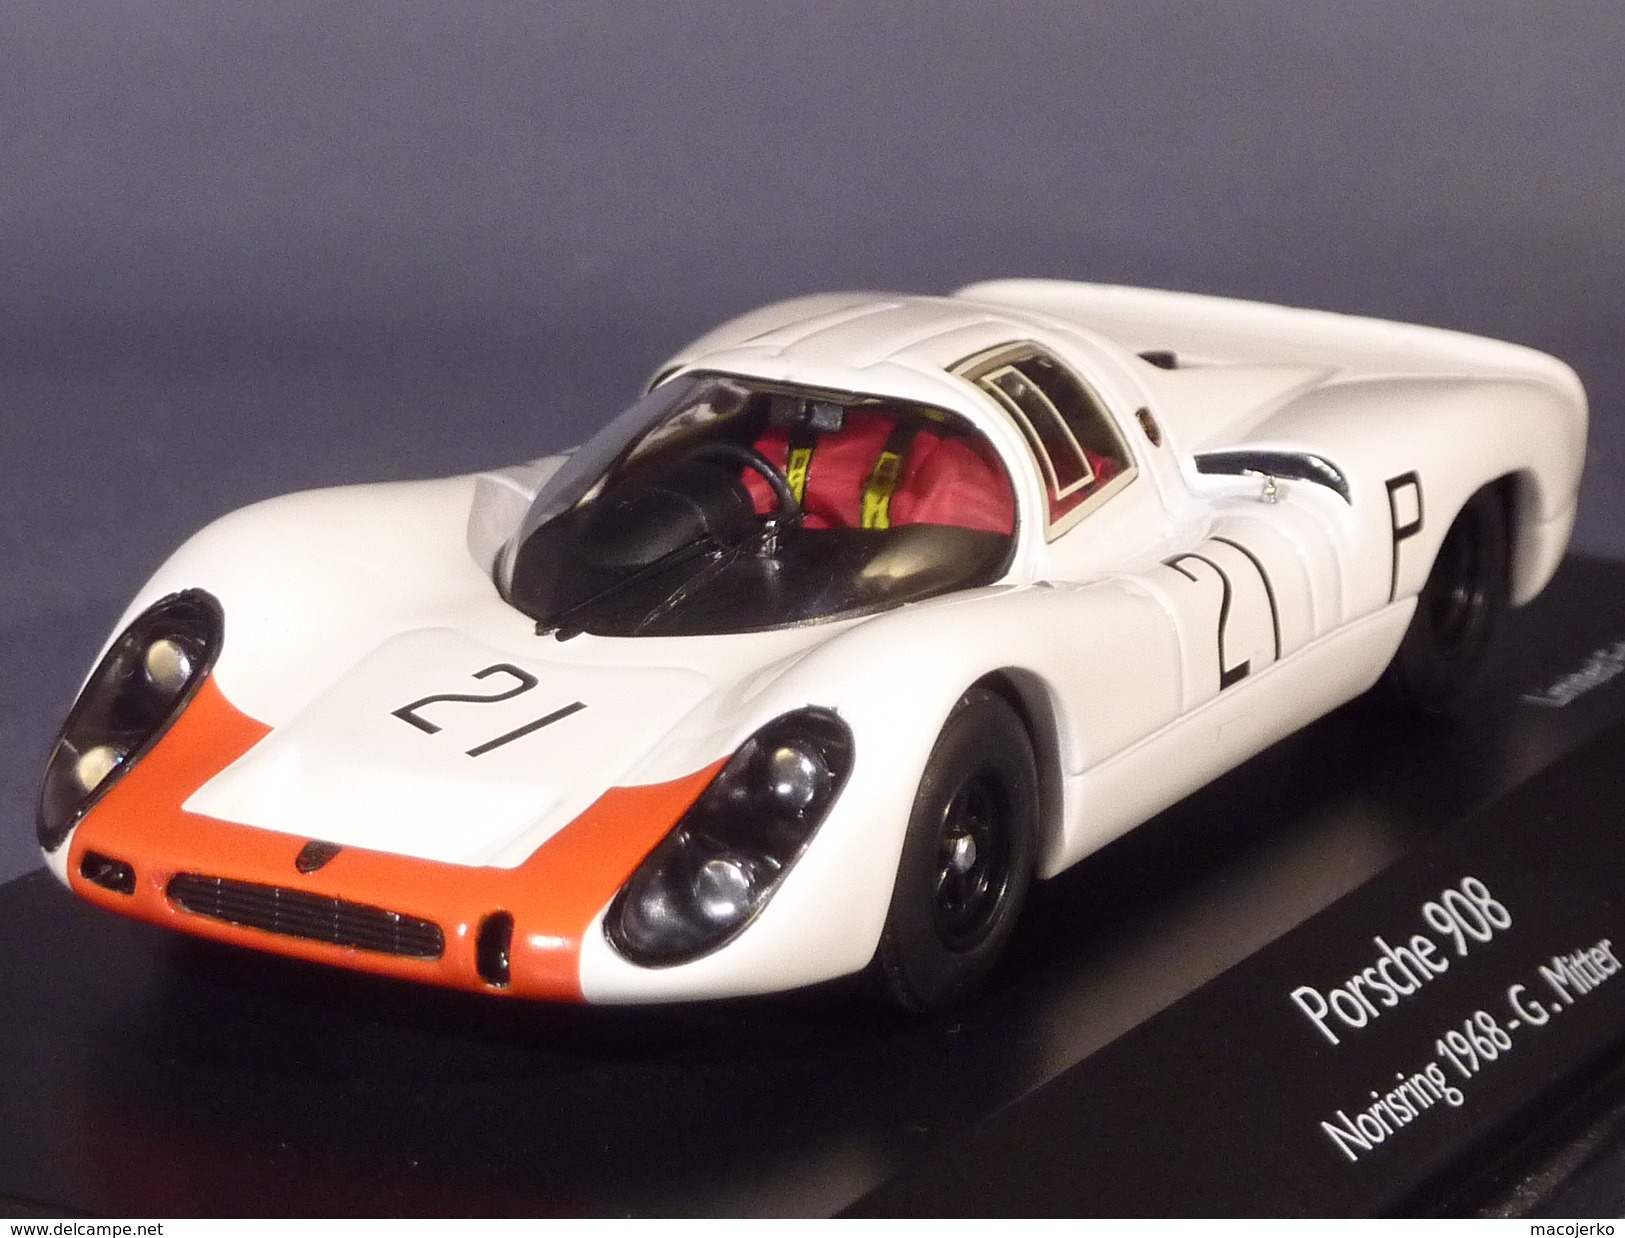 Schuco 03726, Porsche 908 KH #21 Norisring 1968, Mitter, 1:43 - Schuco